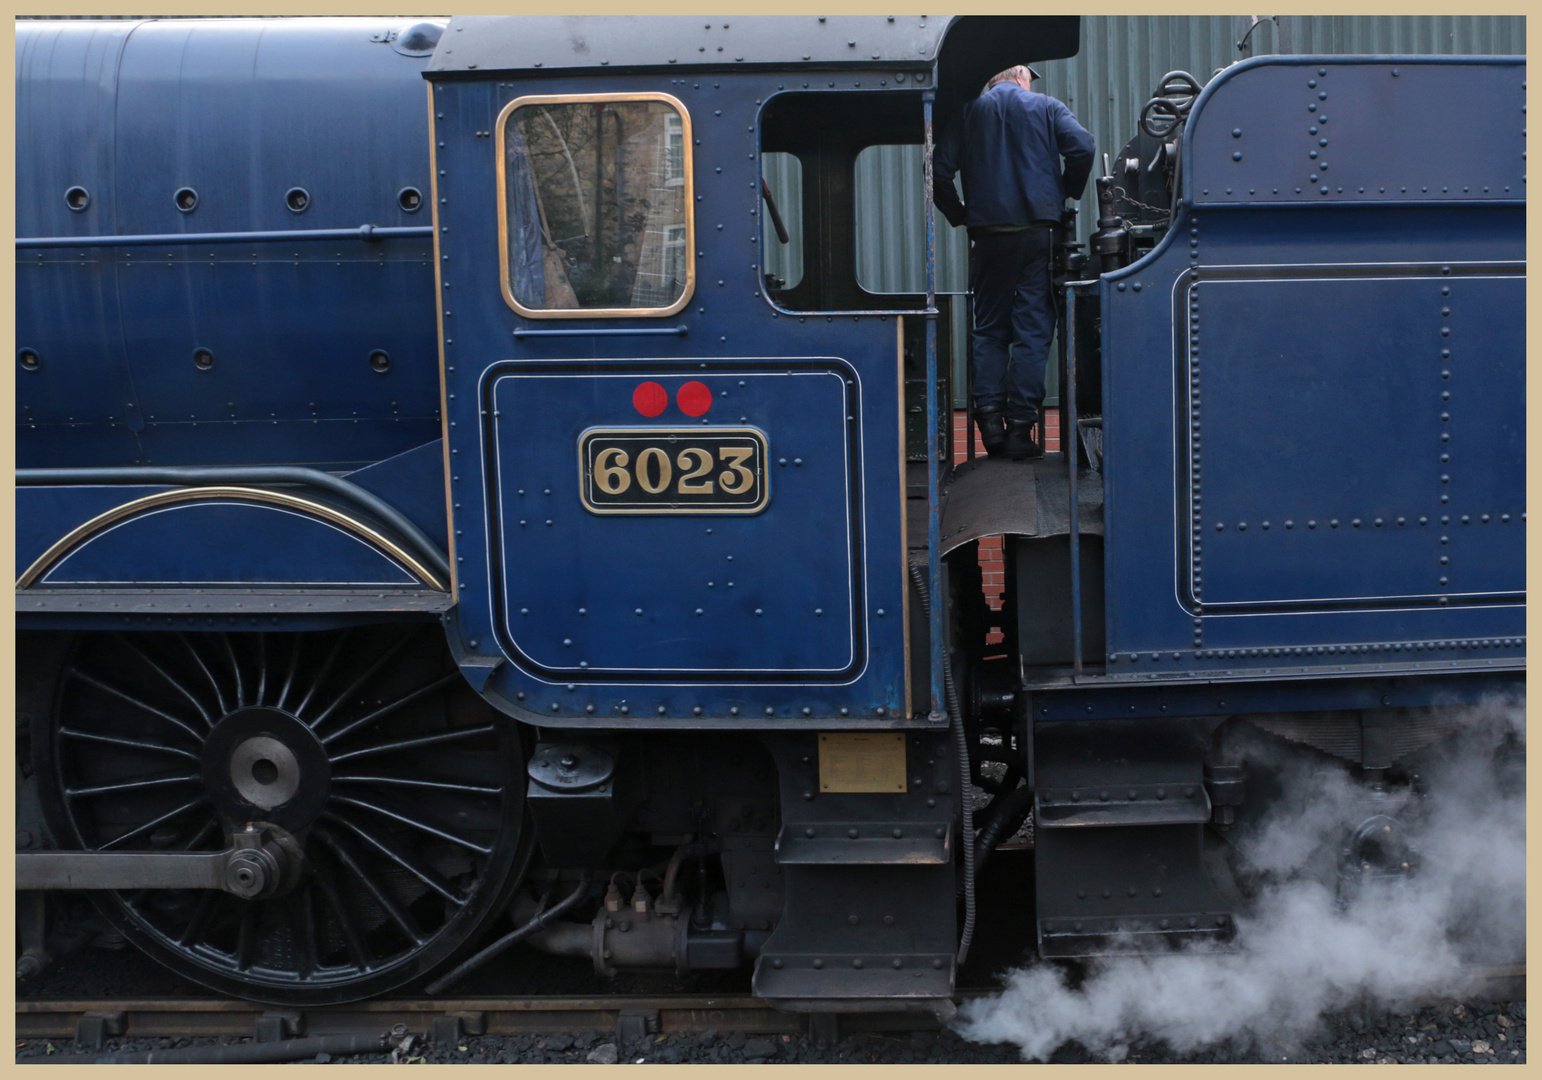 Pickering steam railway